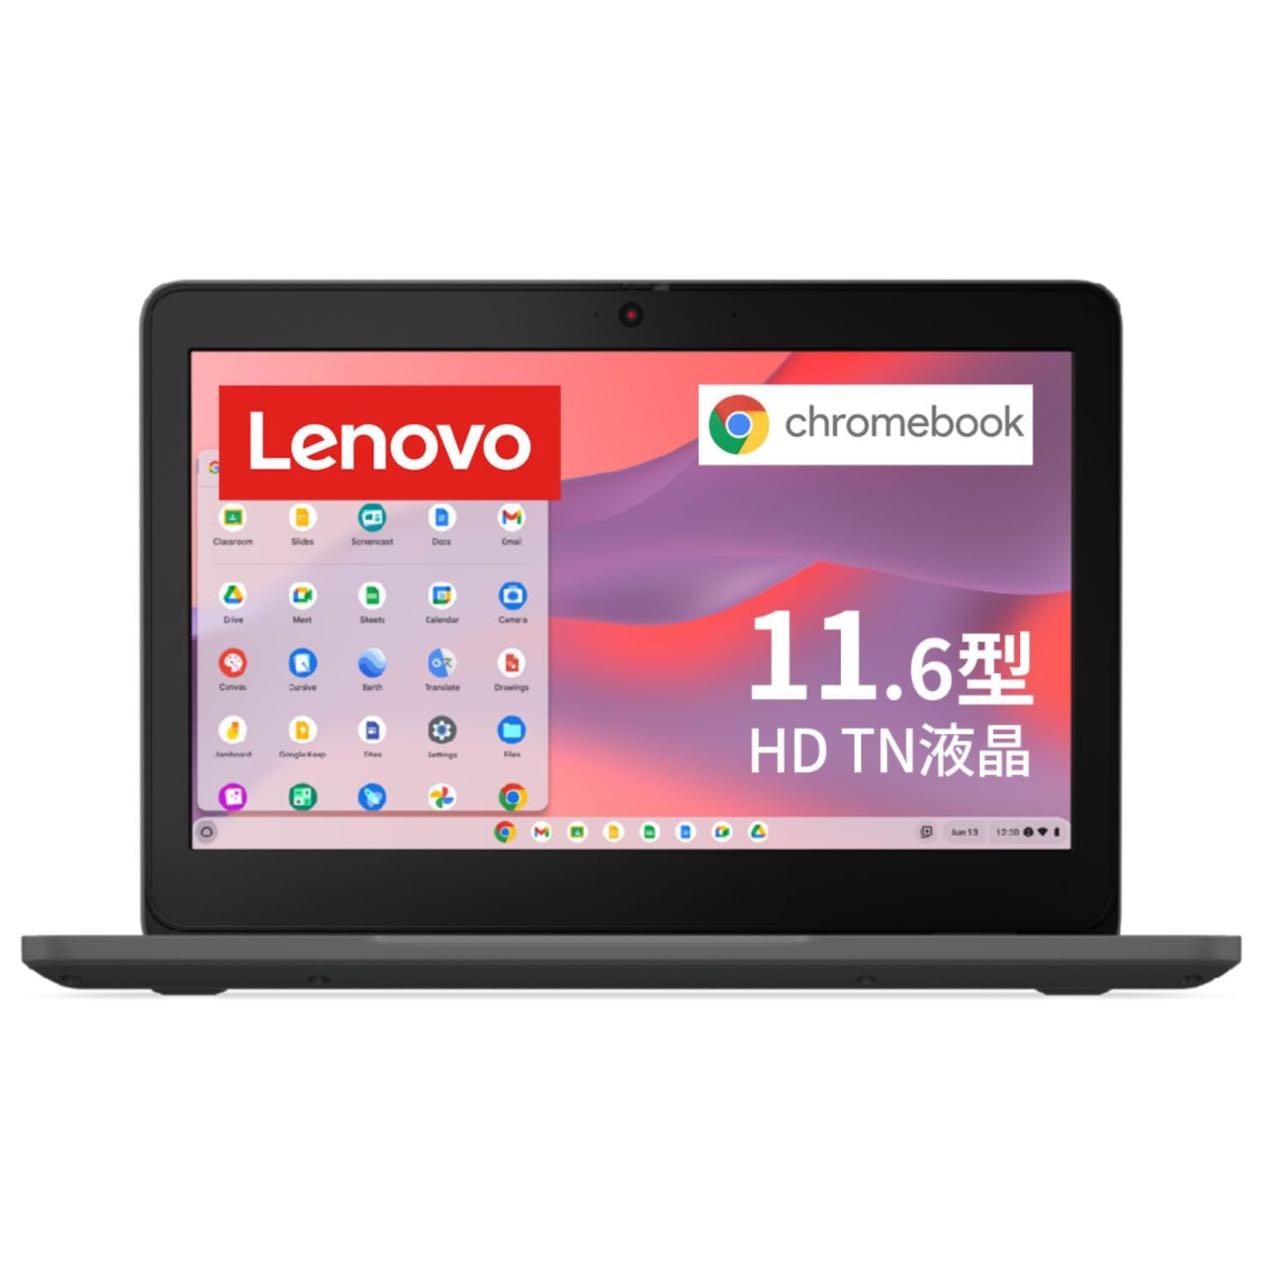 Lenovo レノボ Chromebook クロームブック 100e 11.6インチ グラファイトグレー 82W0000FJP 4580550080395